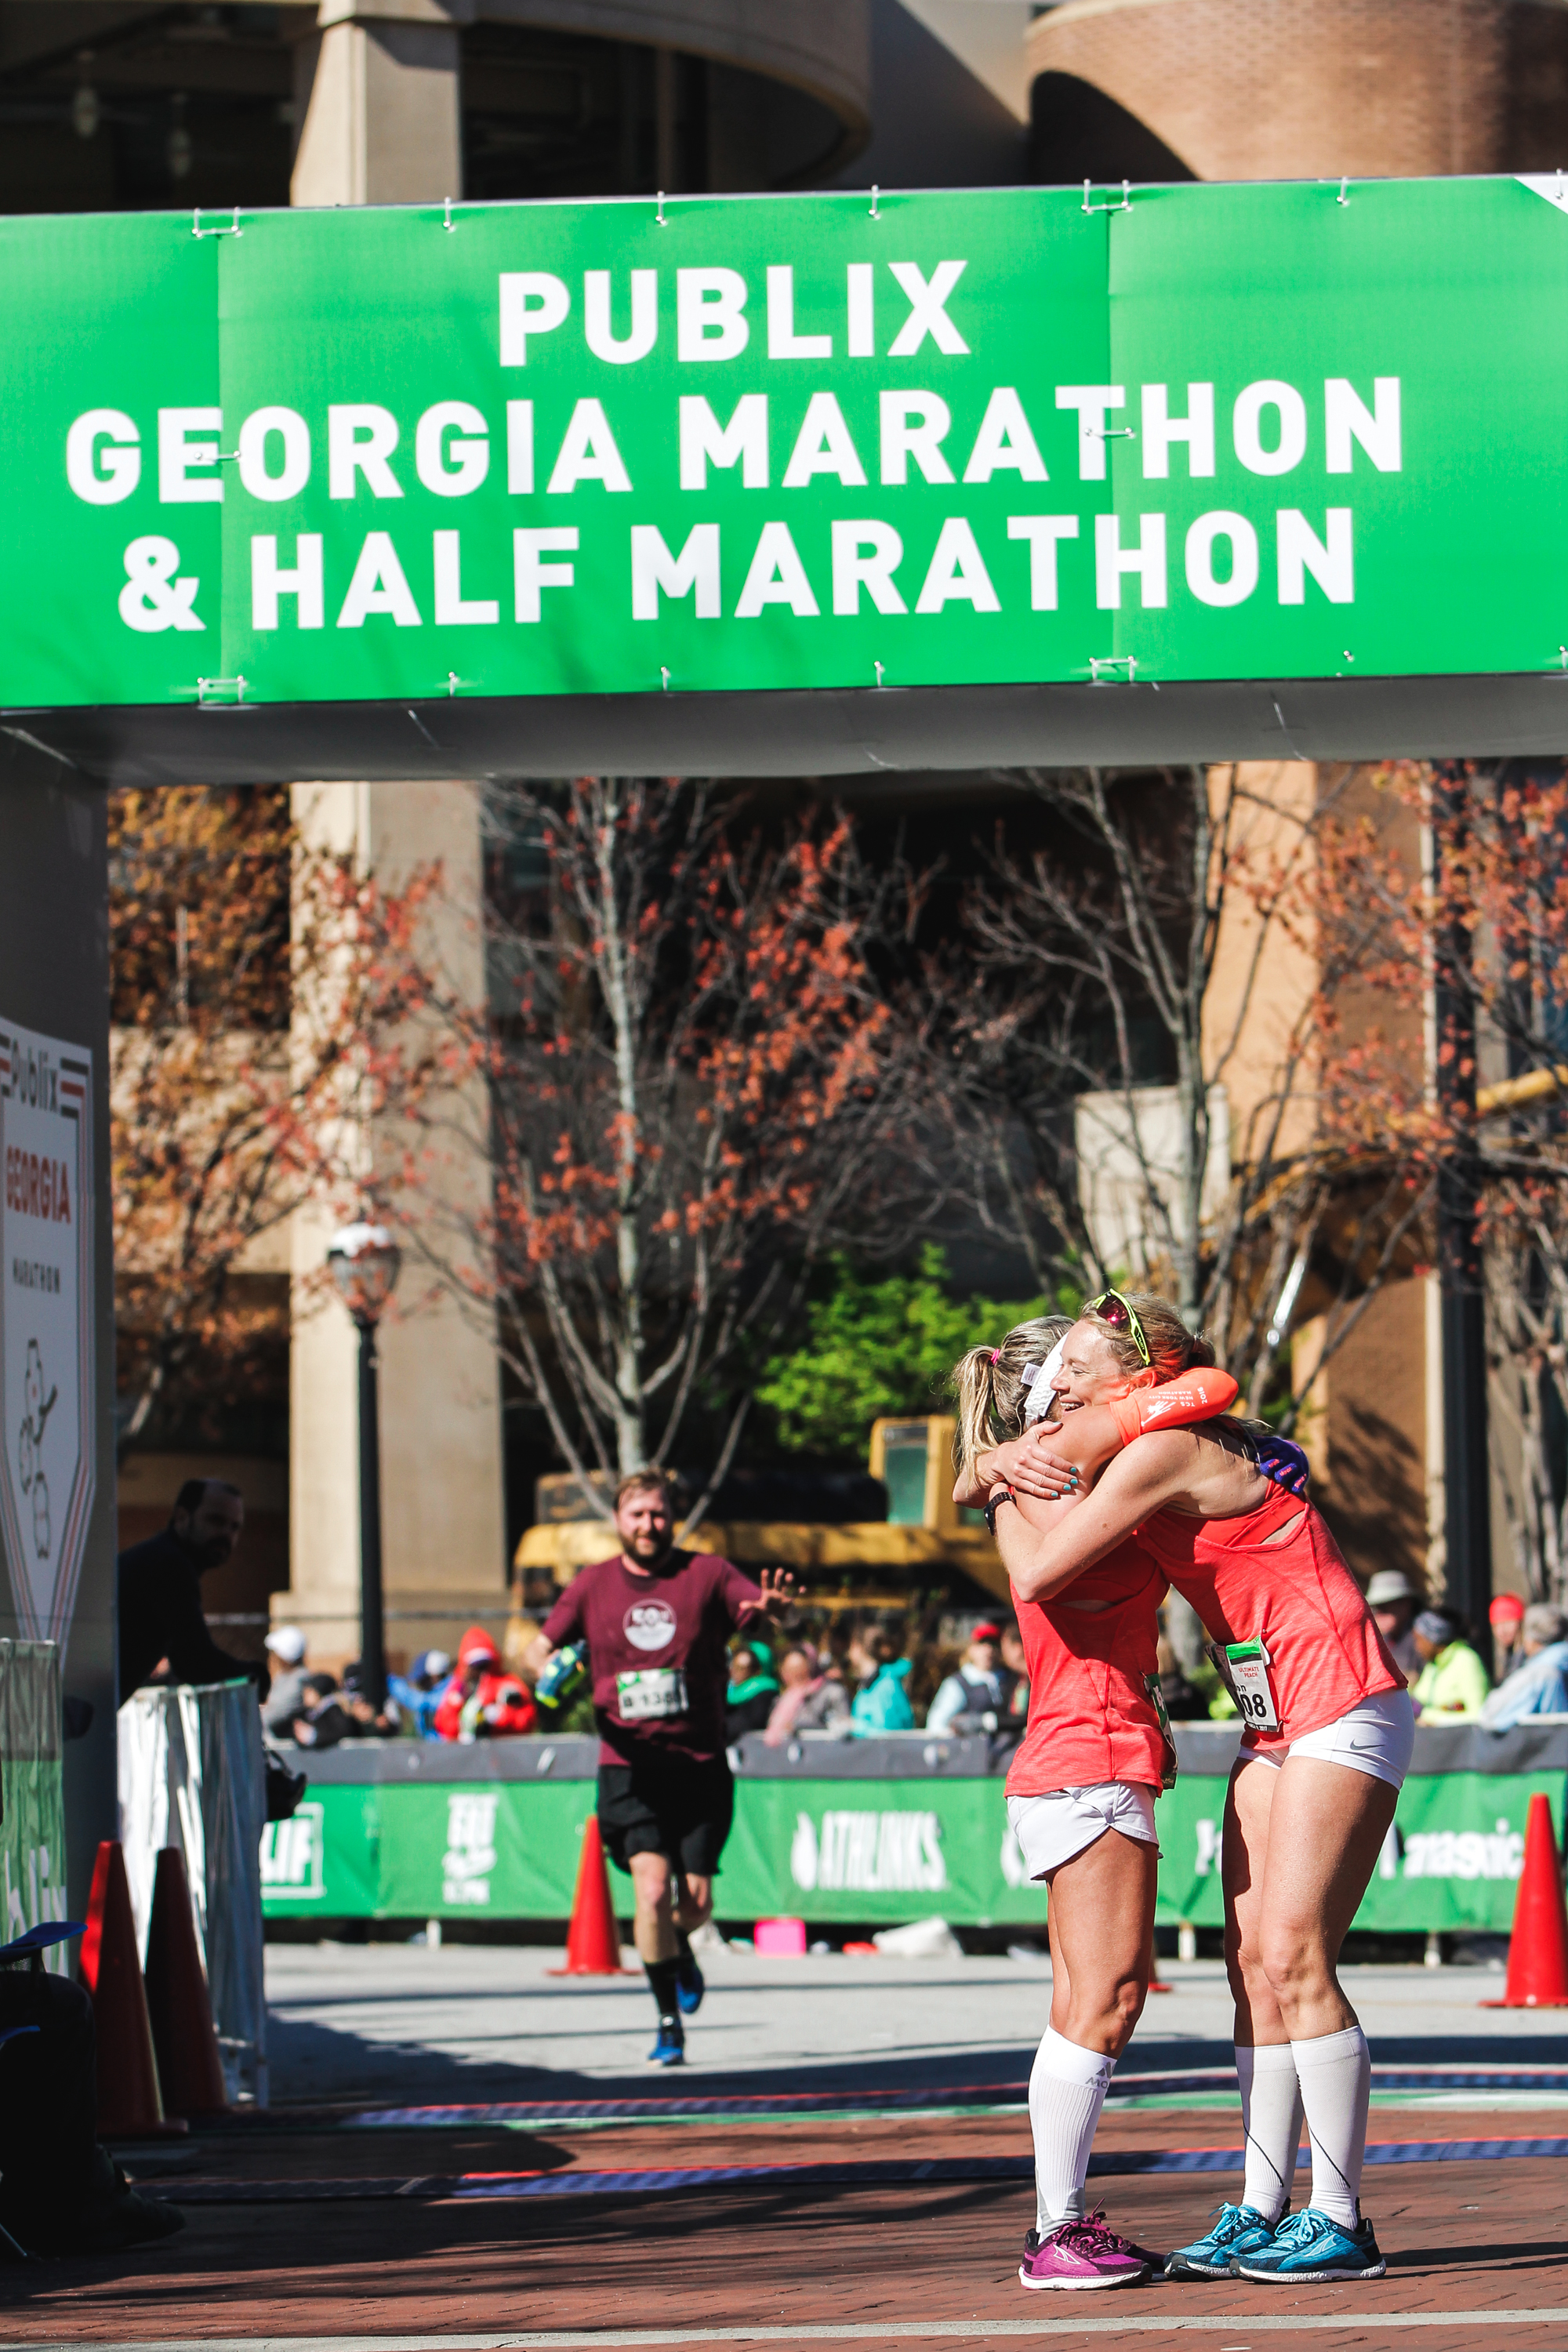 Publix Georgia Marathon, Atlanta GA